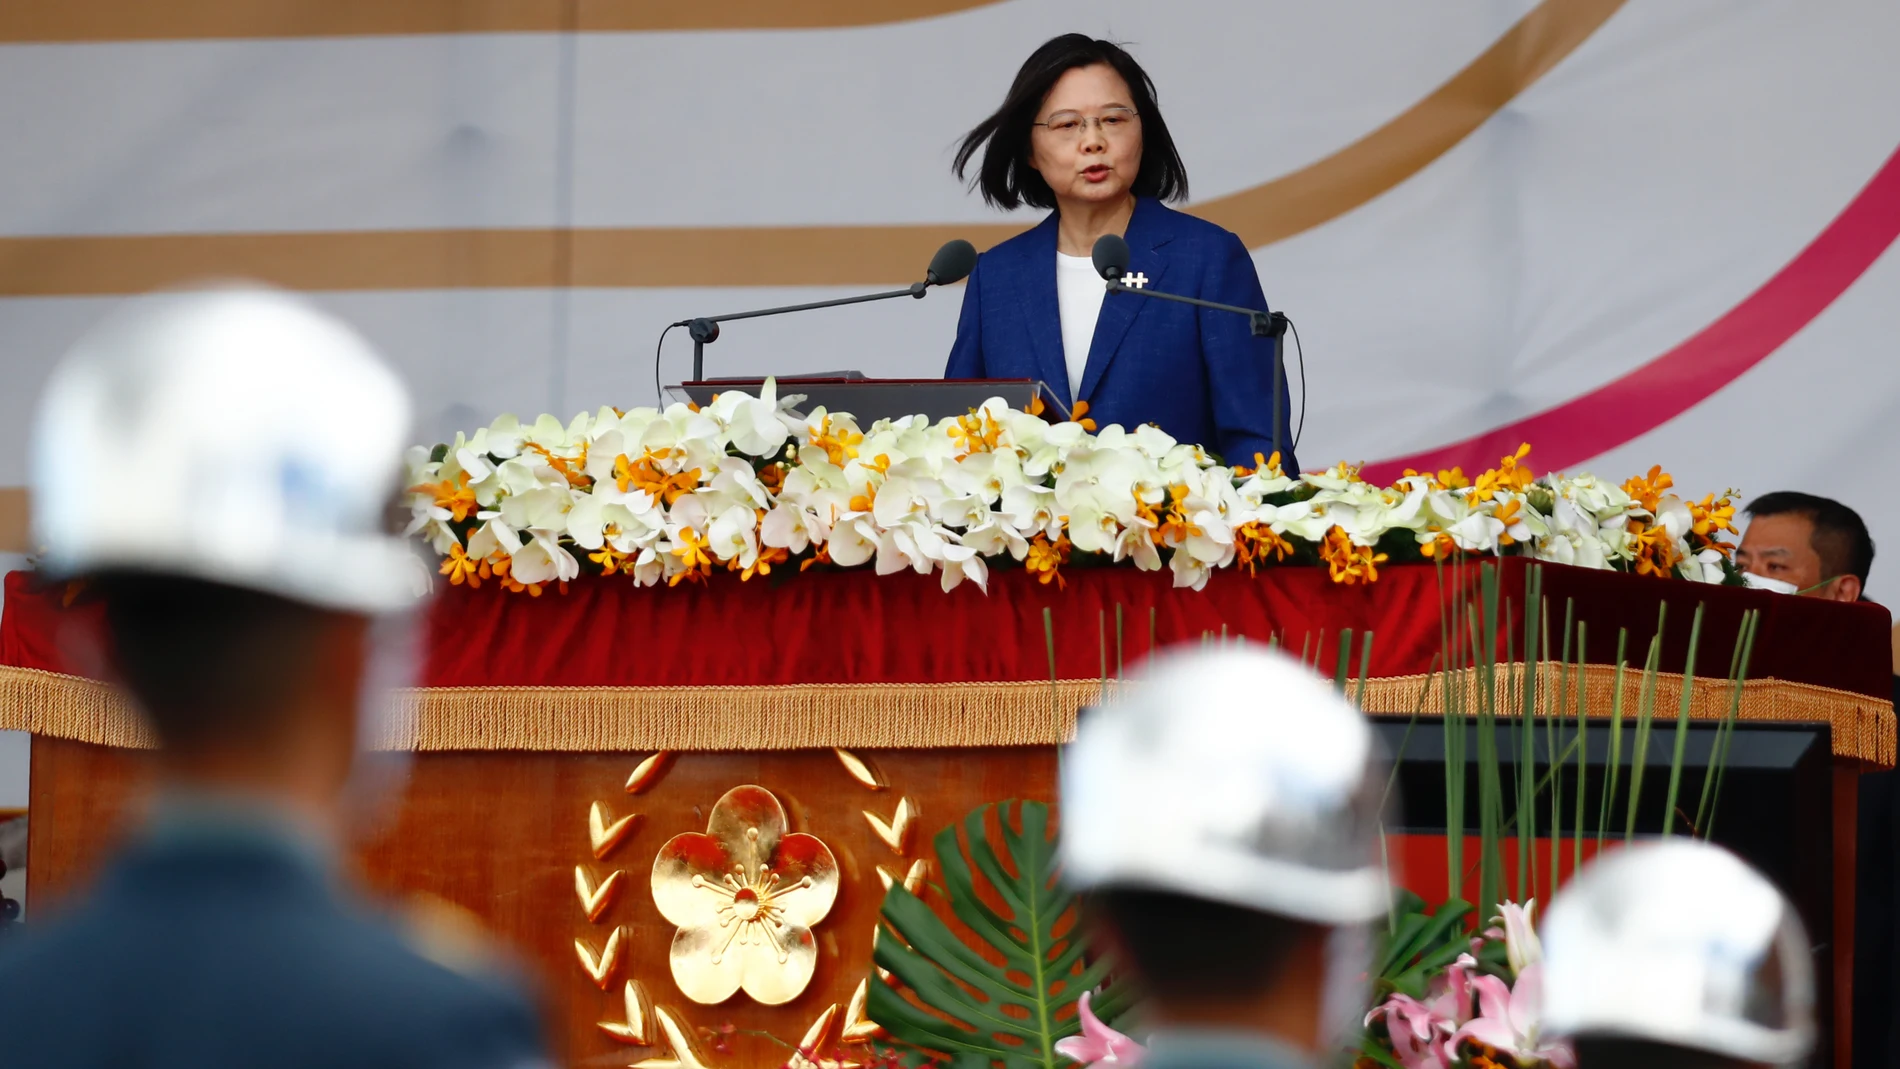 La prsesidenta taiwansesa Tsai Ing Wen pronuncia un discruso durante le Día Nacional de Taiwán